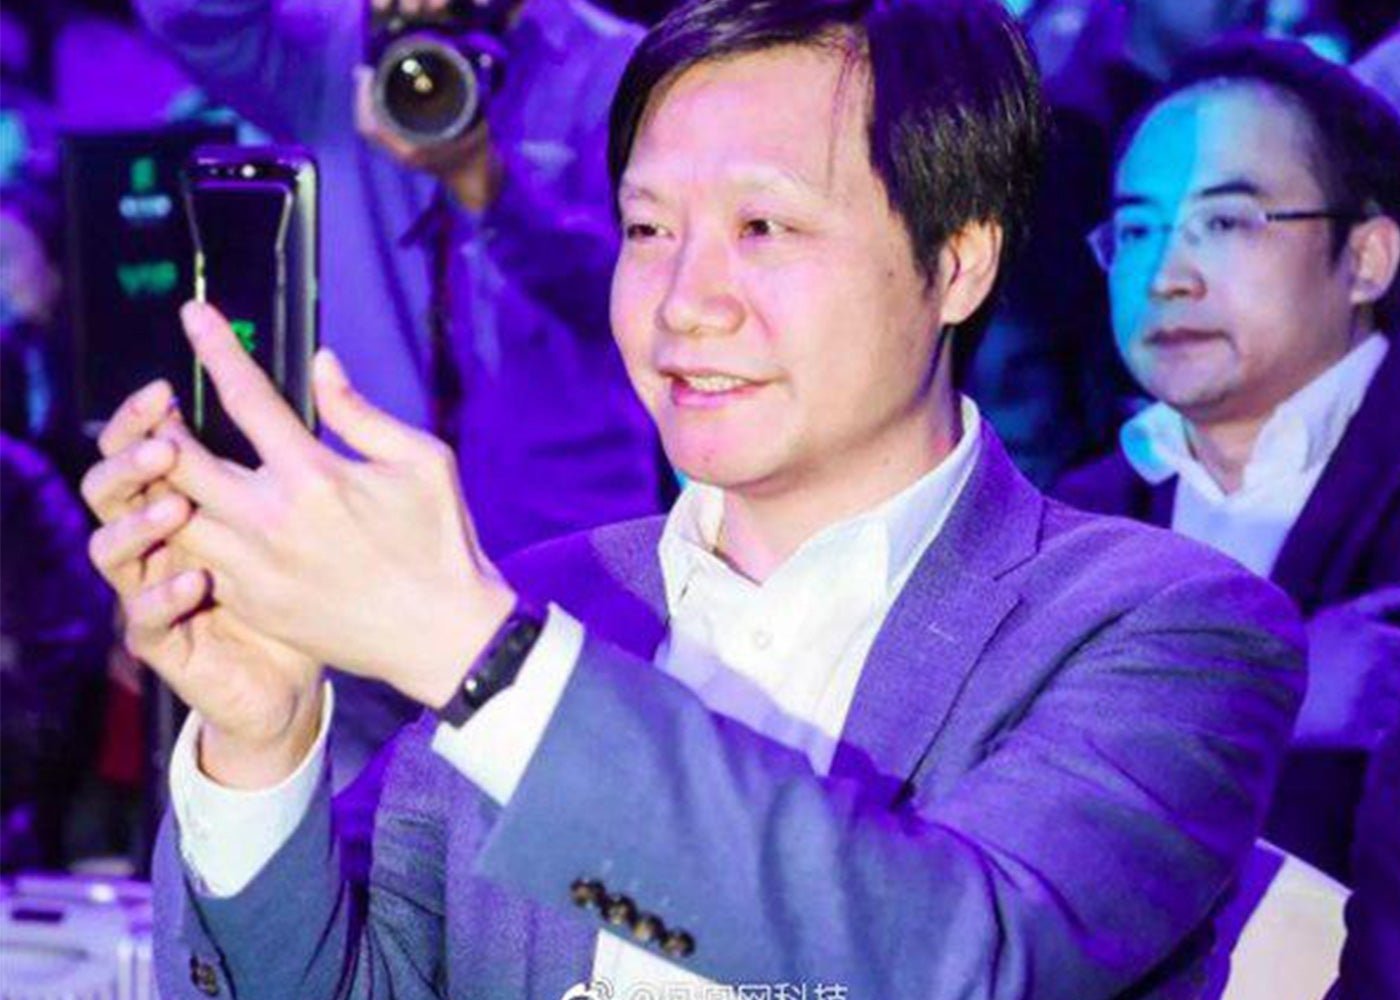 El CEO de Xiaomi elige sus tres móviles de Xiaomi favoritos